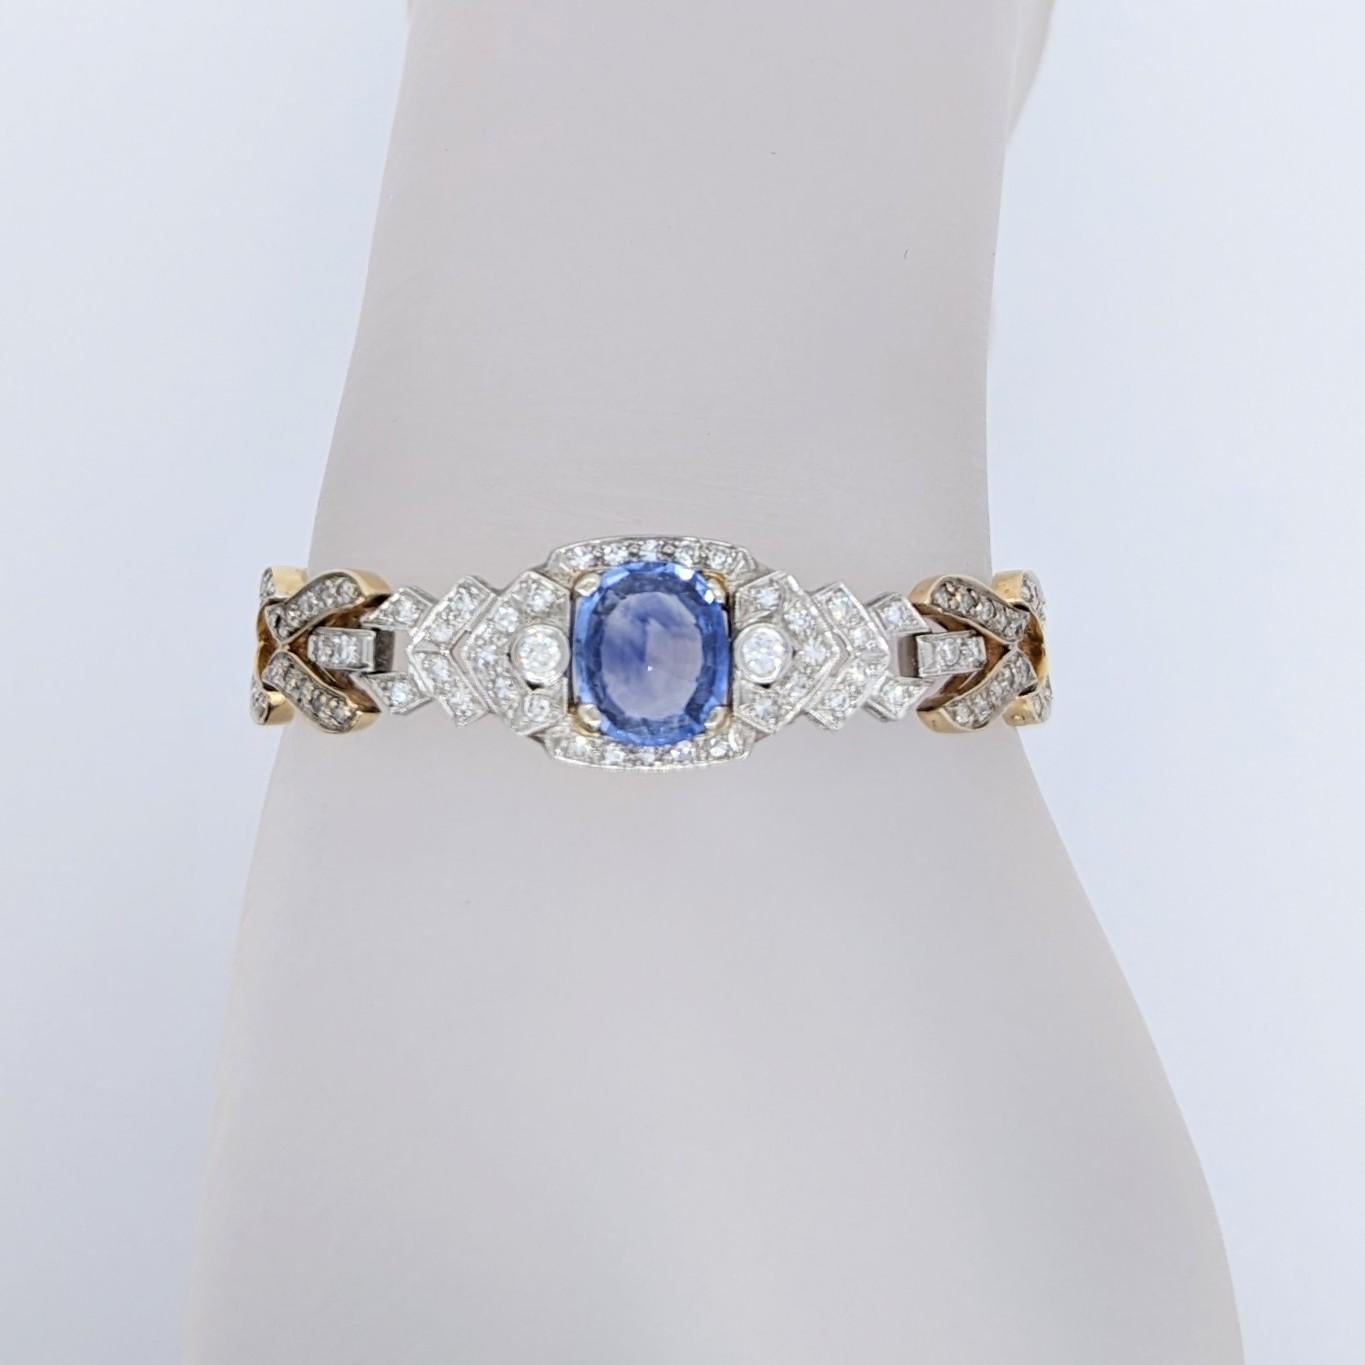 Schönes großes blaues Saphir-Oval mit weißen Diamanten guter Qualität.  Handgefertigt aus 14 Karat Gelb- und Weißgold.  Die Länge beträgt 7